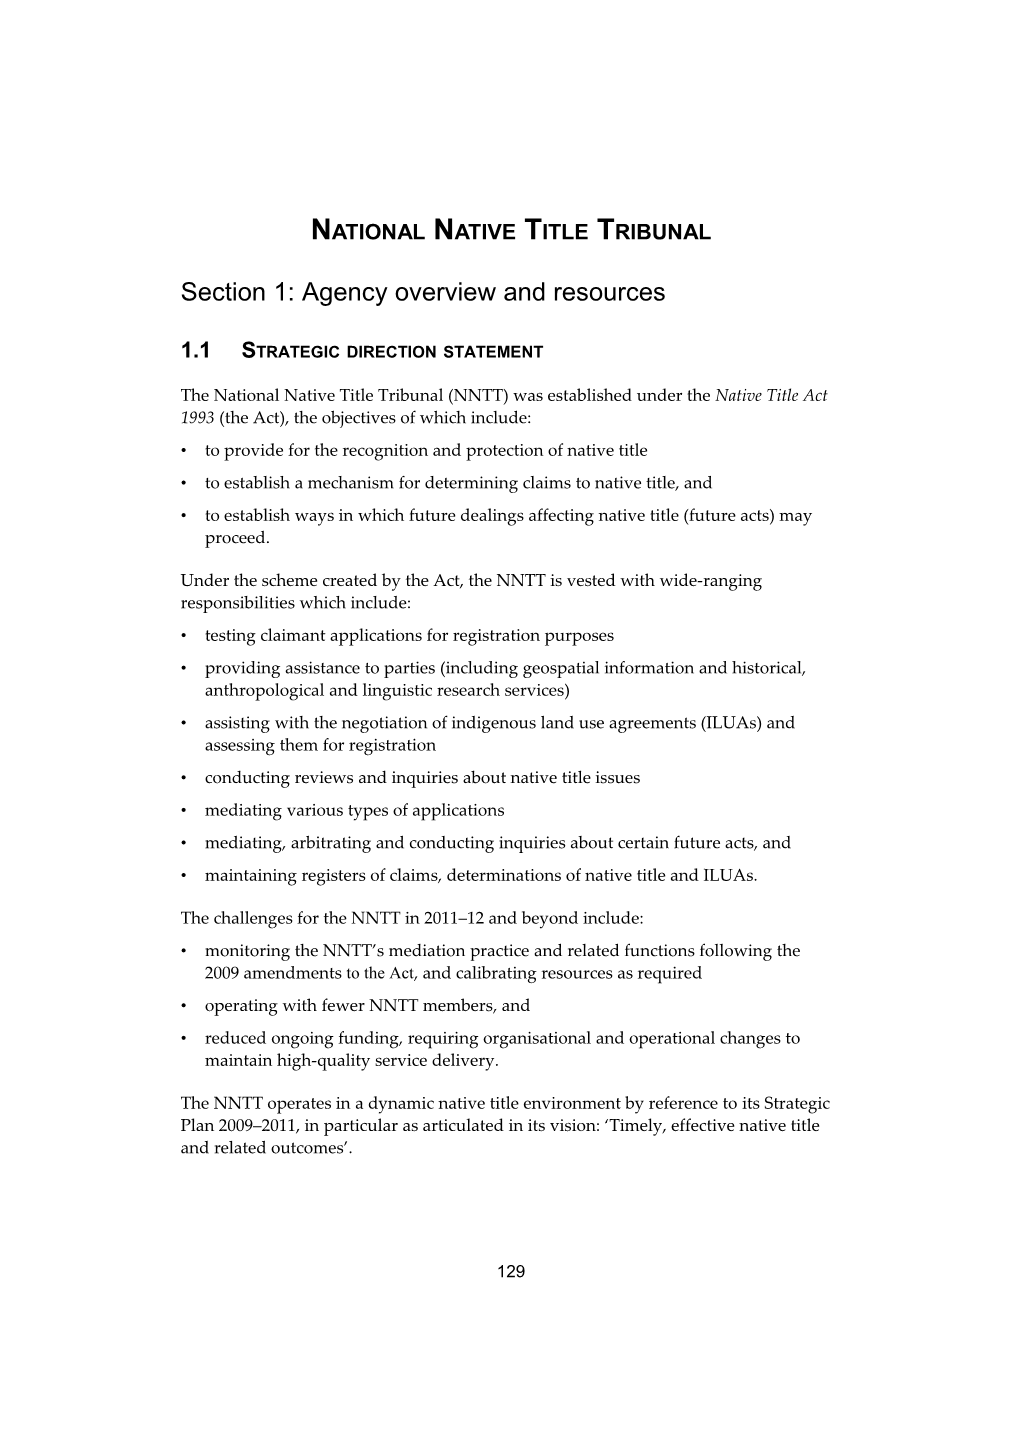 Portfolio Budget Statements 2011-12 - NNTT